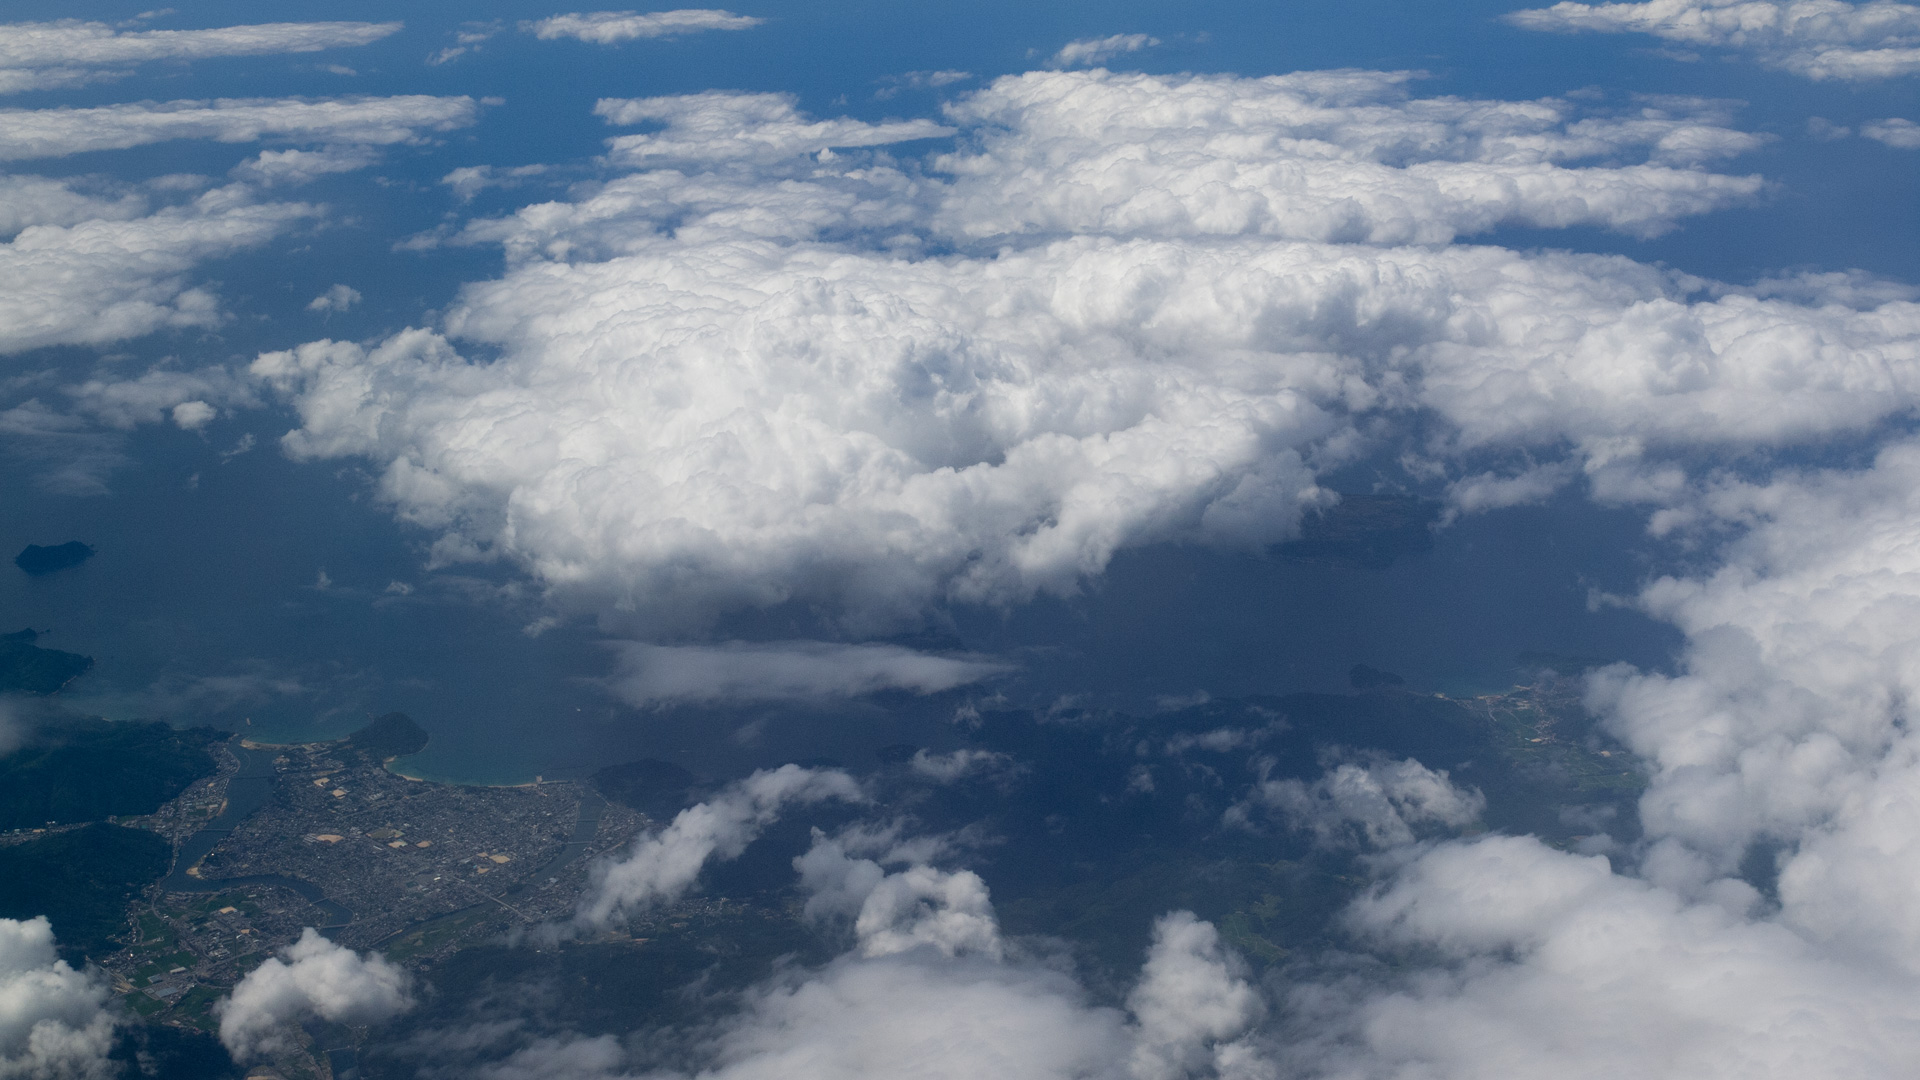 萩市 上空からの景色のデスクトップ壁紙 ワイド画面 19 1080